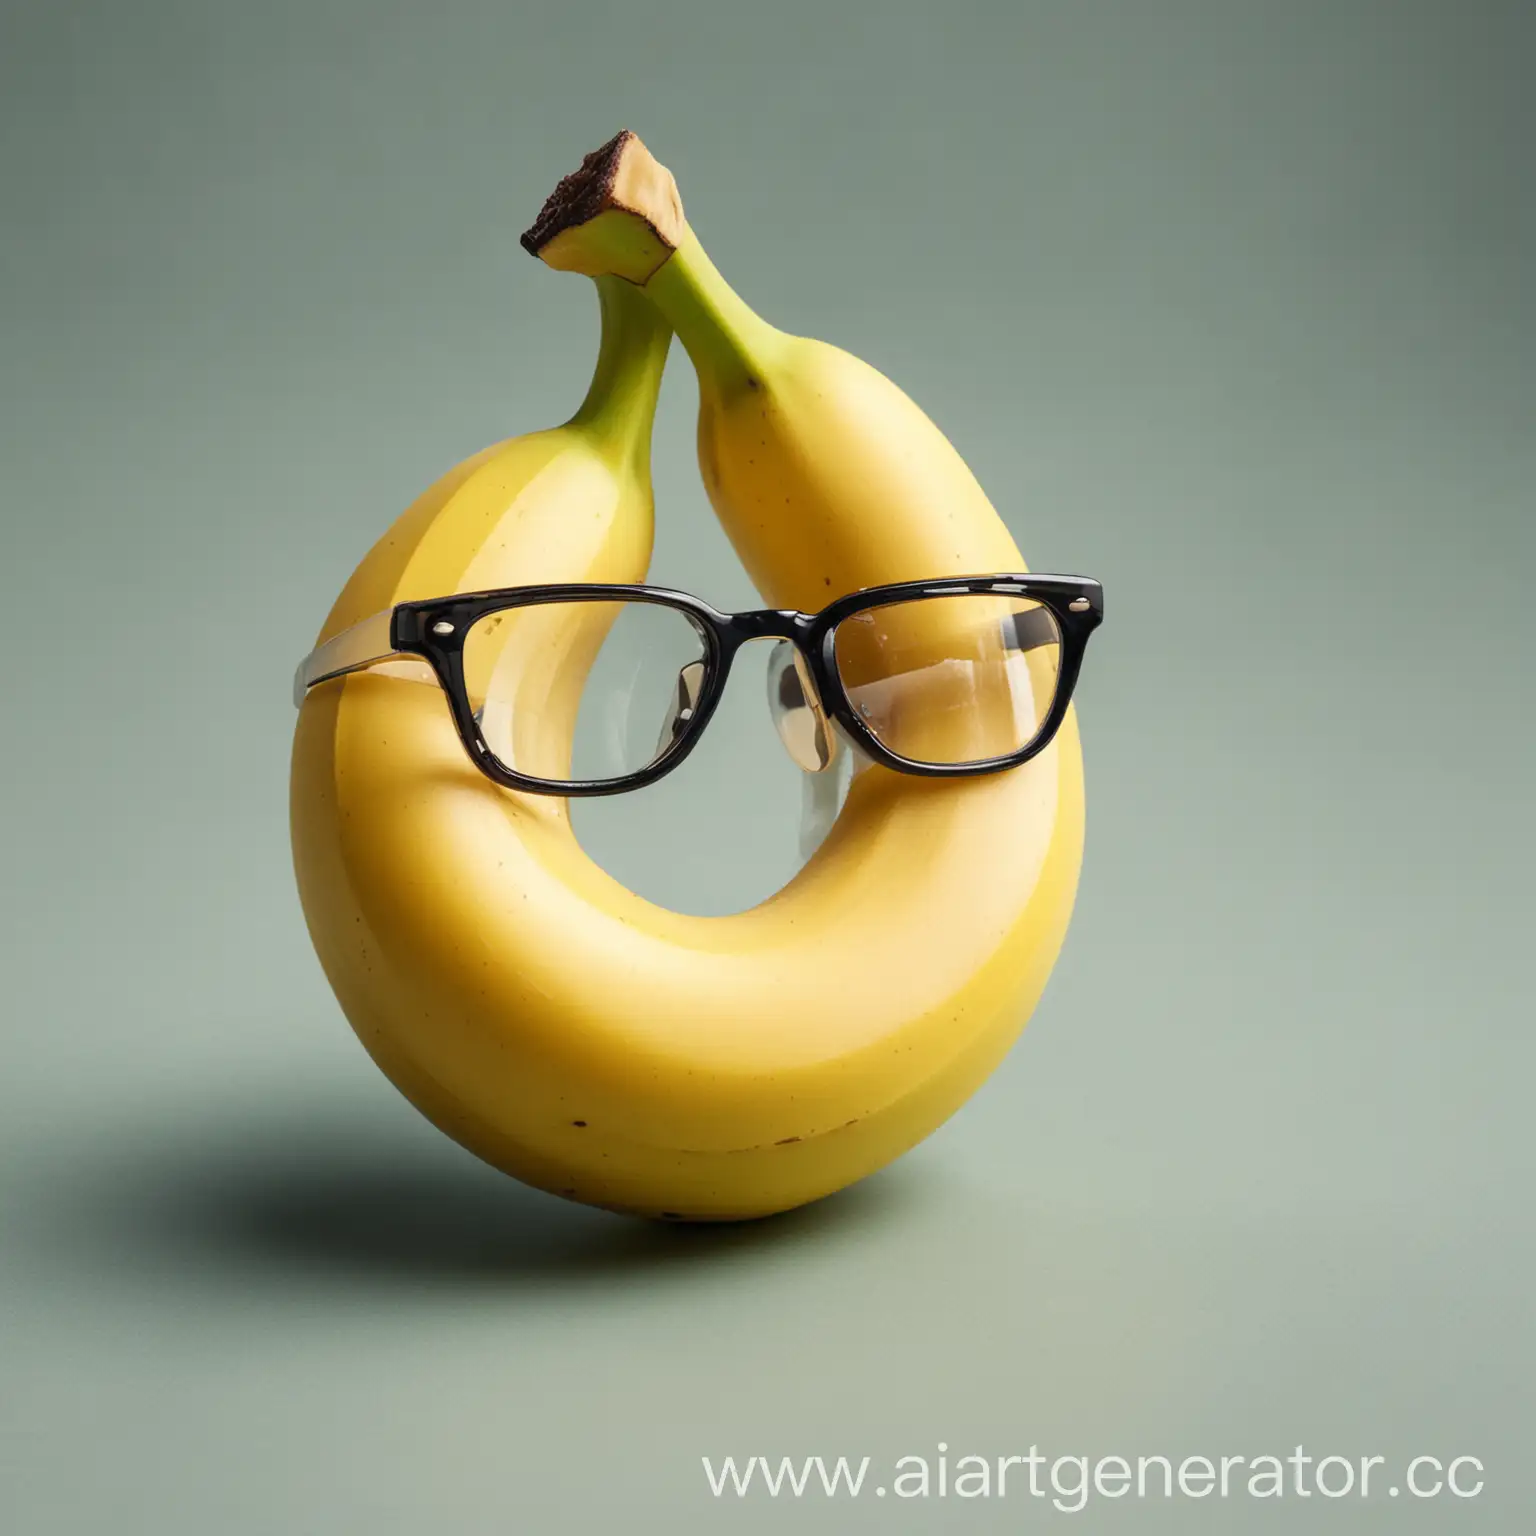 Banana-Wearing-Sunglasses-Cool-Fruit-Fashion-Statement